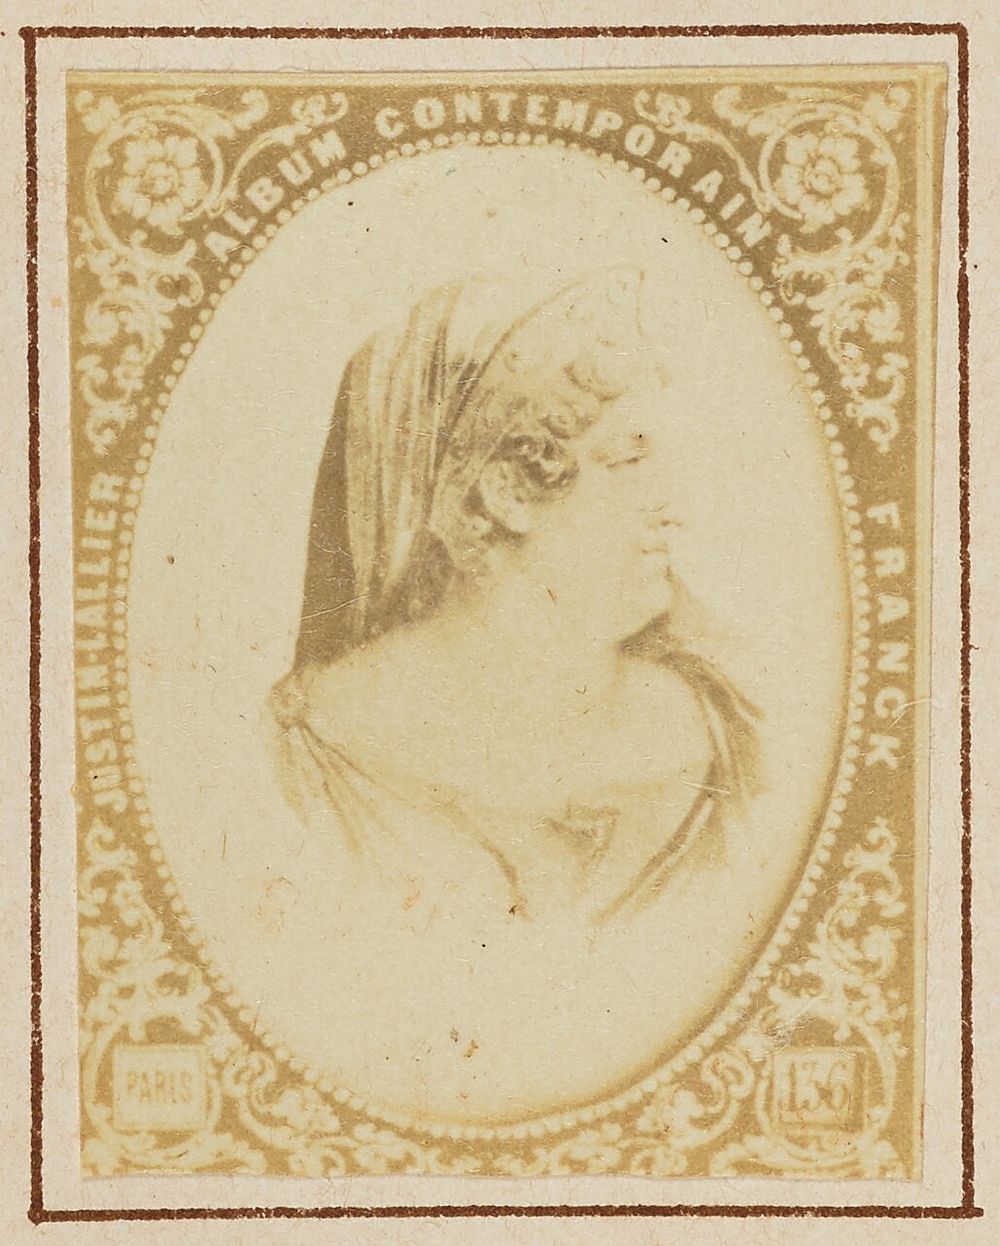 Marguerite Georges by Franck François Marie Louis Alexandre Gobinet de Villecholles and Justin Lallier